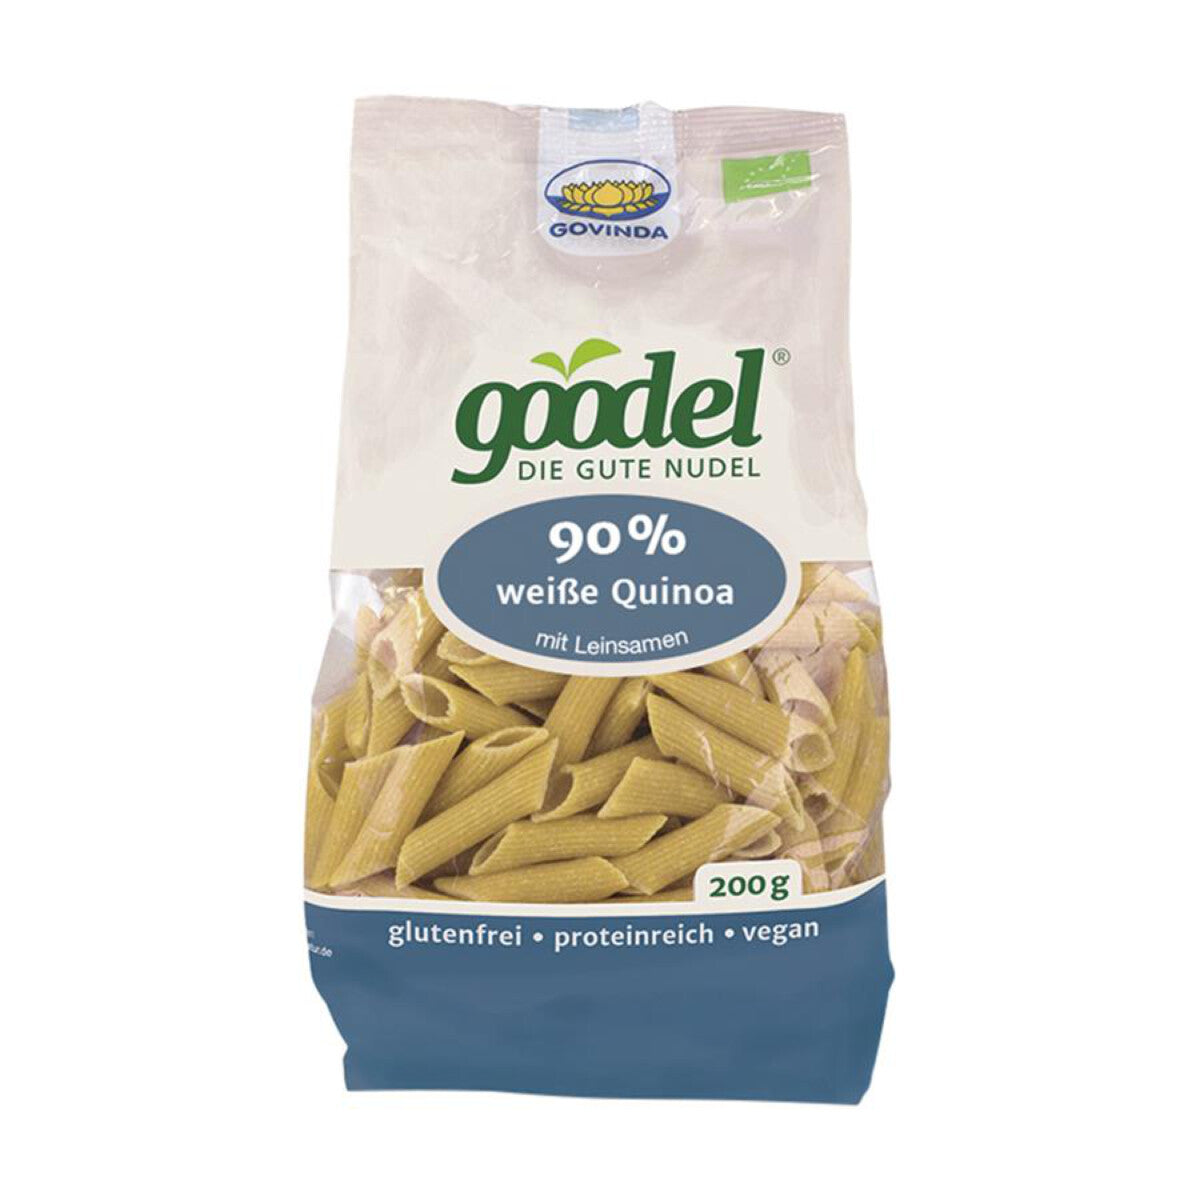 GOVINDA GOODEL Weiße Quinoa Penne mit Leinsamen - 200 g